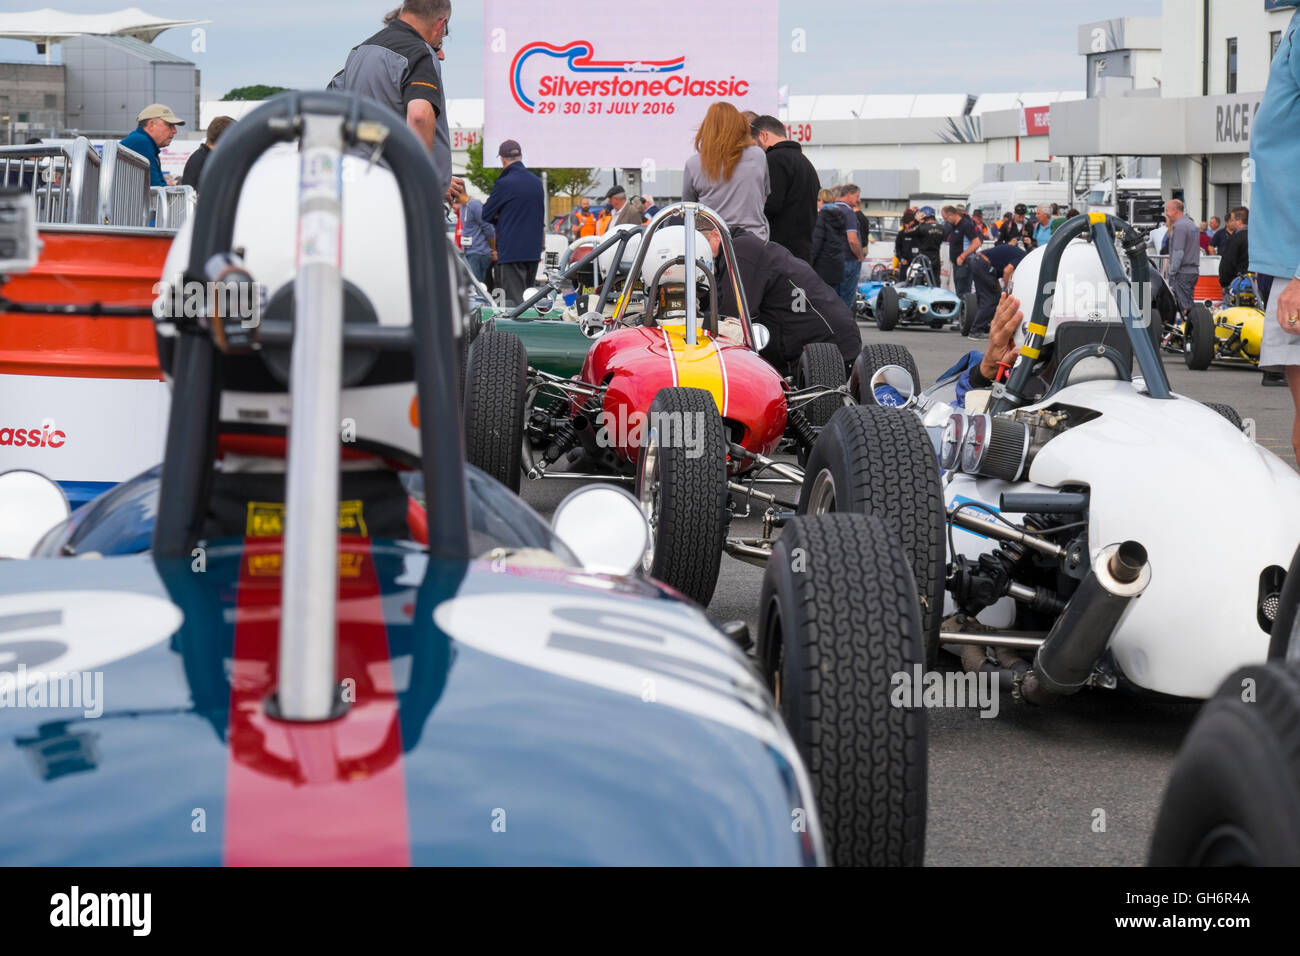 Formel Junior Rennwagen aufgereiht im Fahrerlager bei der 2016 Silverstone Classic Veranstaltung, England, UK Stockfoto